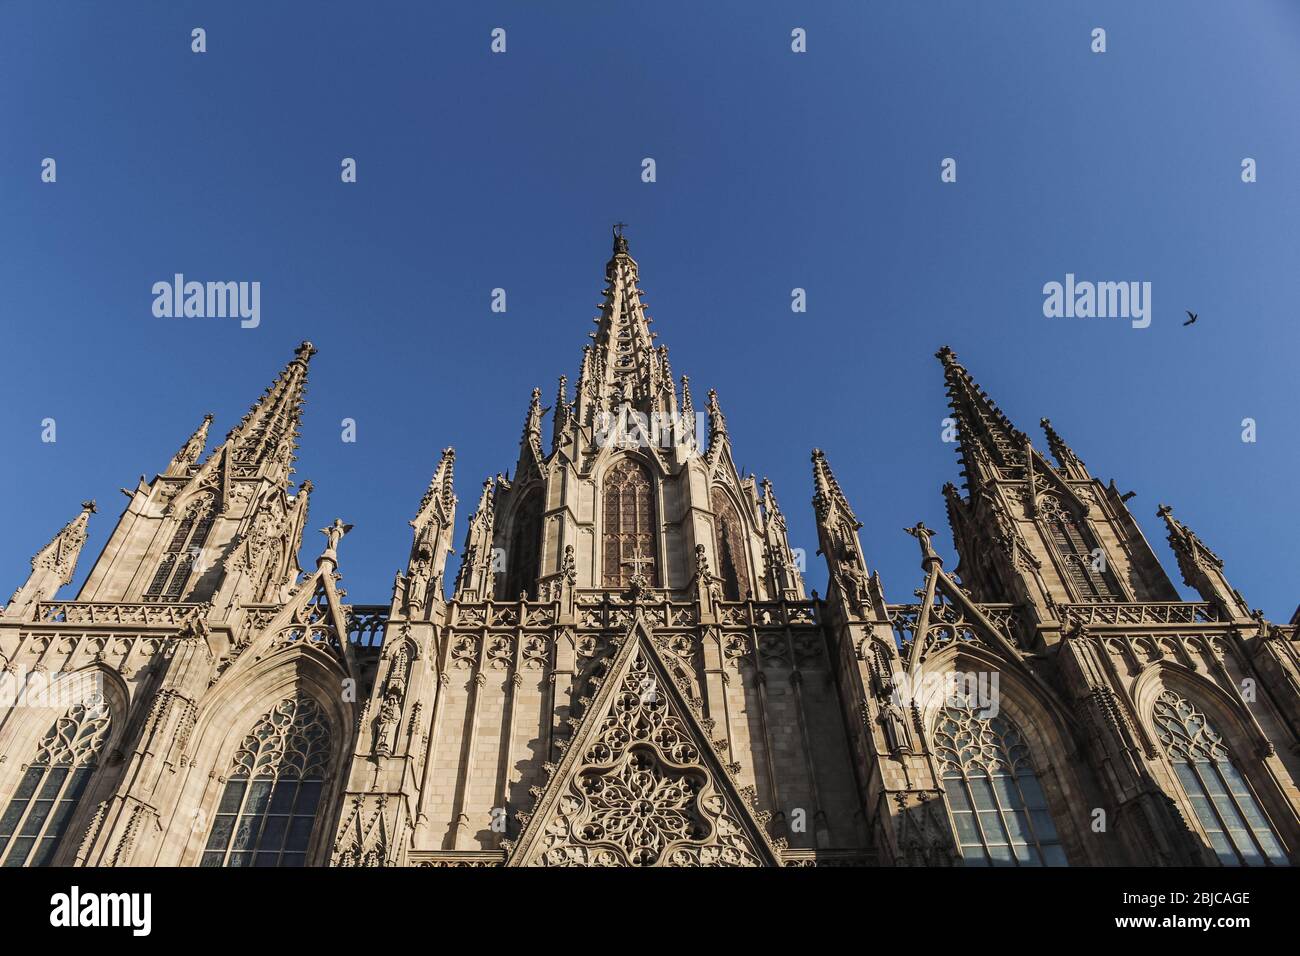 C'est une vue de la Cathédrale de la Sainte Croix et de Saint Eulalia (Catedral de la Santa Cruz y Santa Eulalia en espagnol) à Barcelone, Espagne. Banque D'Images